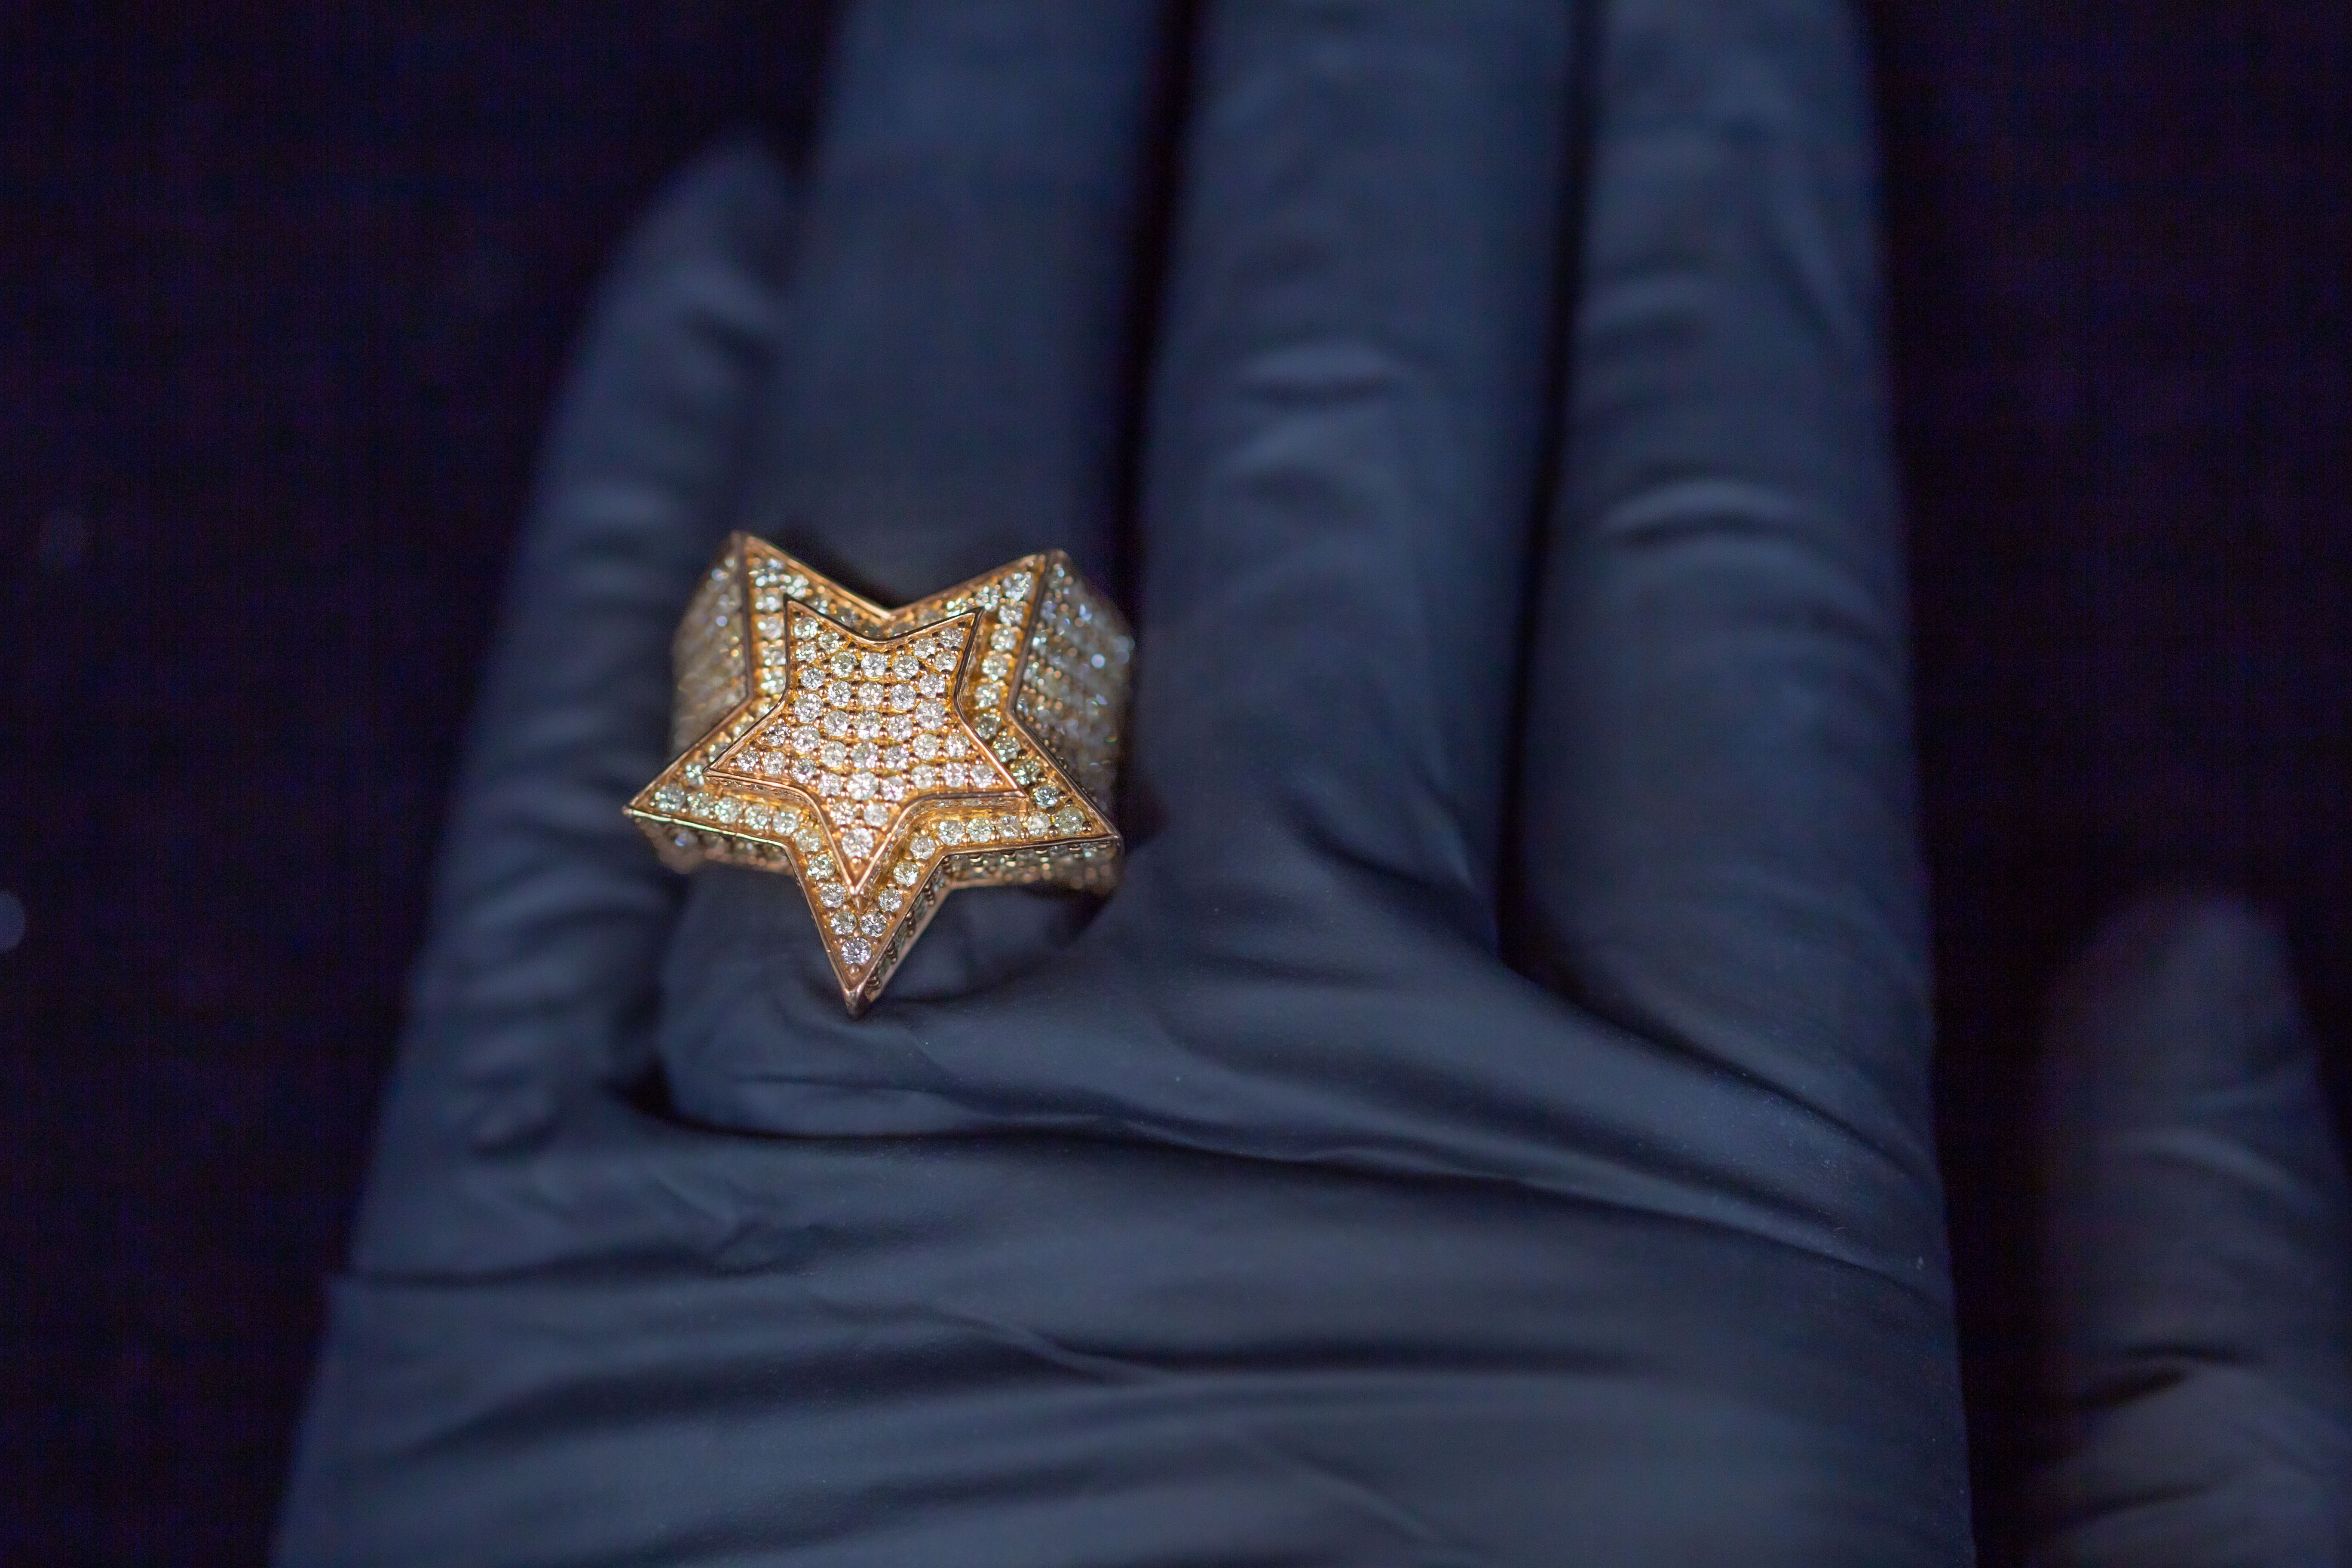 4.00 CT. Diamond Ring in 14K Rose Gold - White Carat Diamonds 